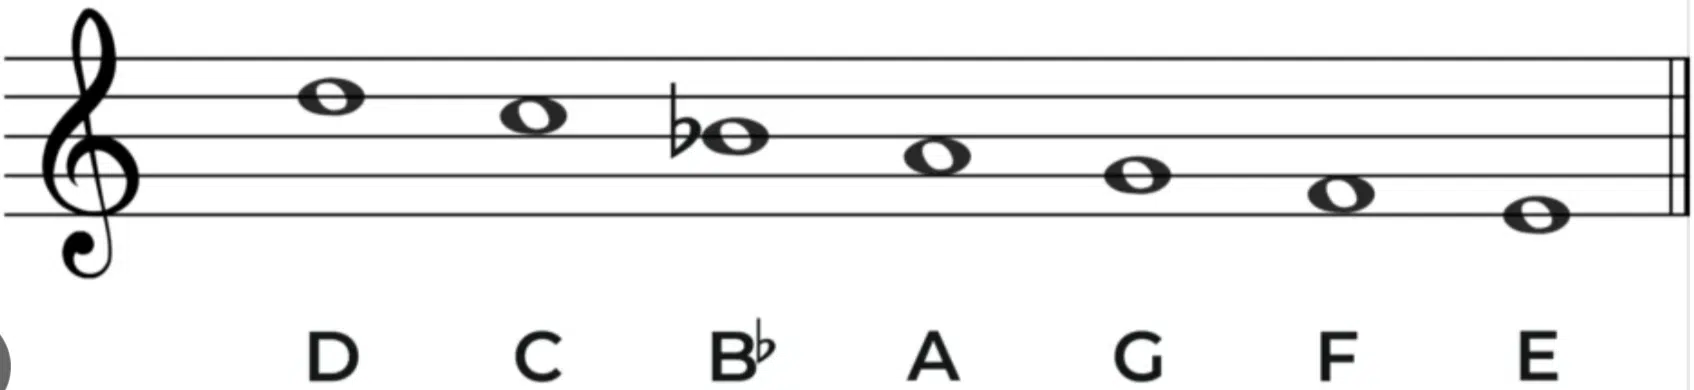 D Melodic minor scale descending - Unison